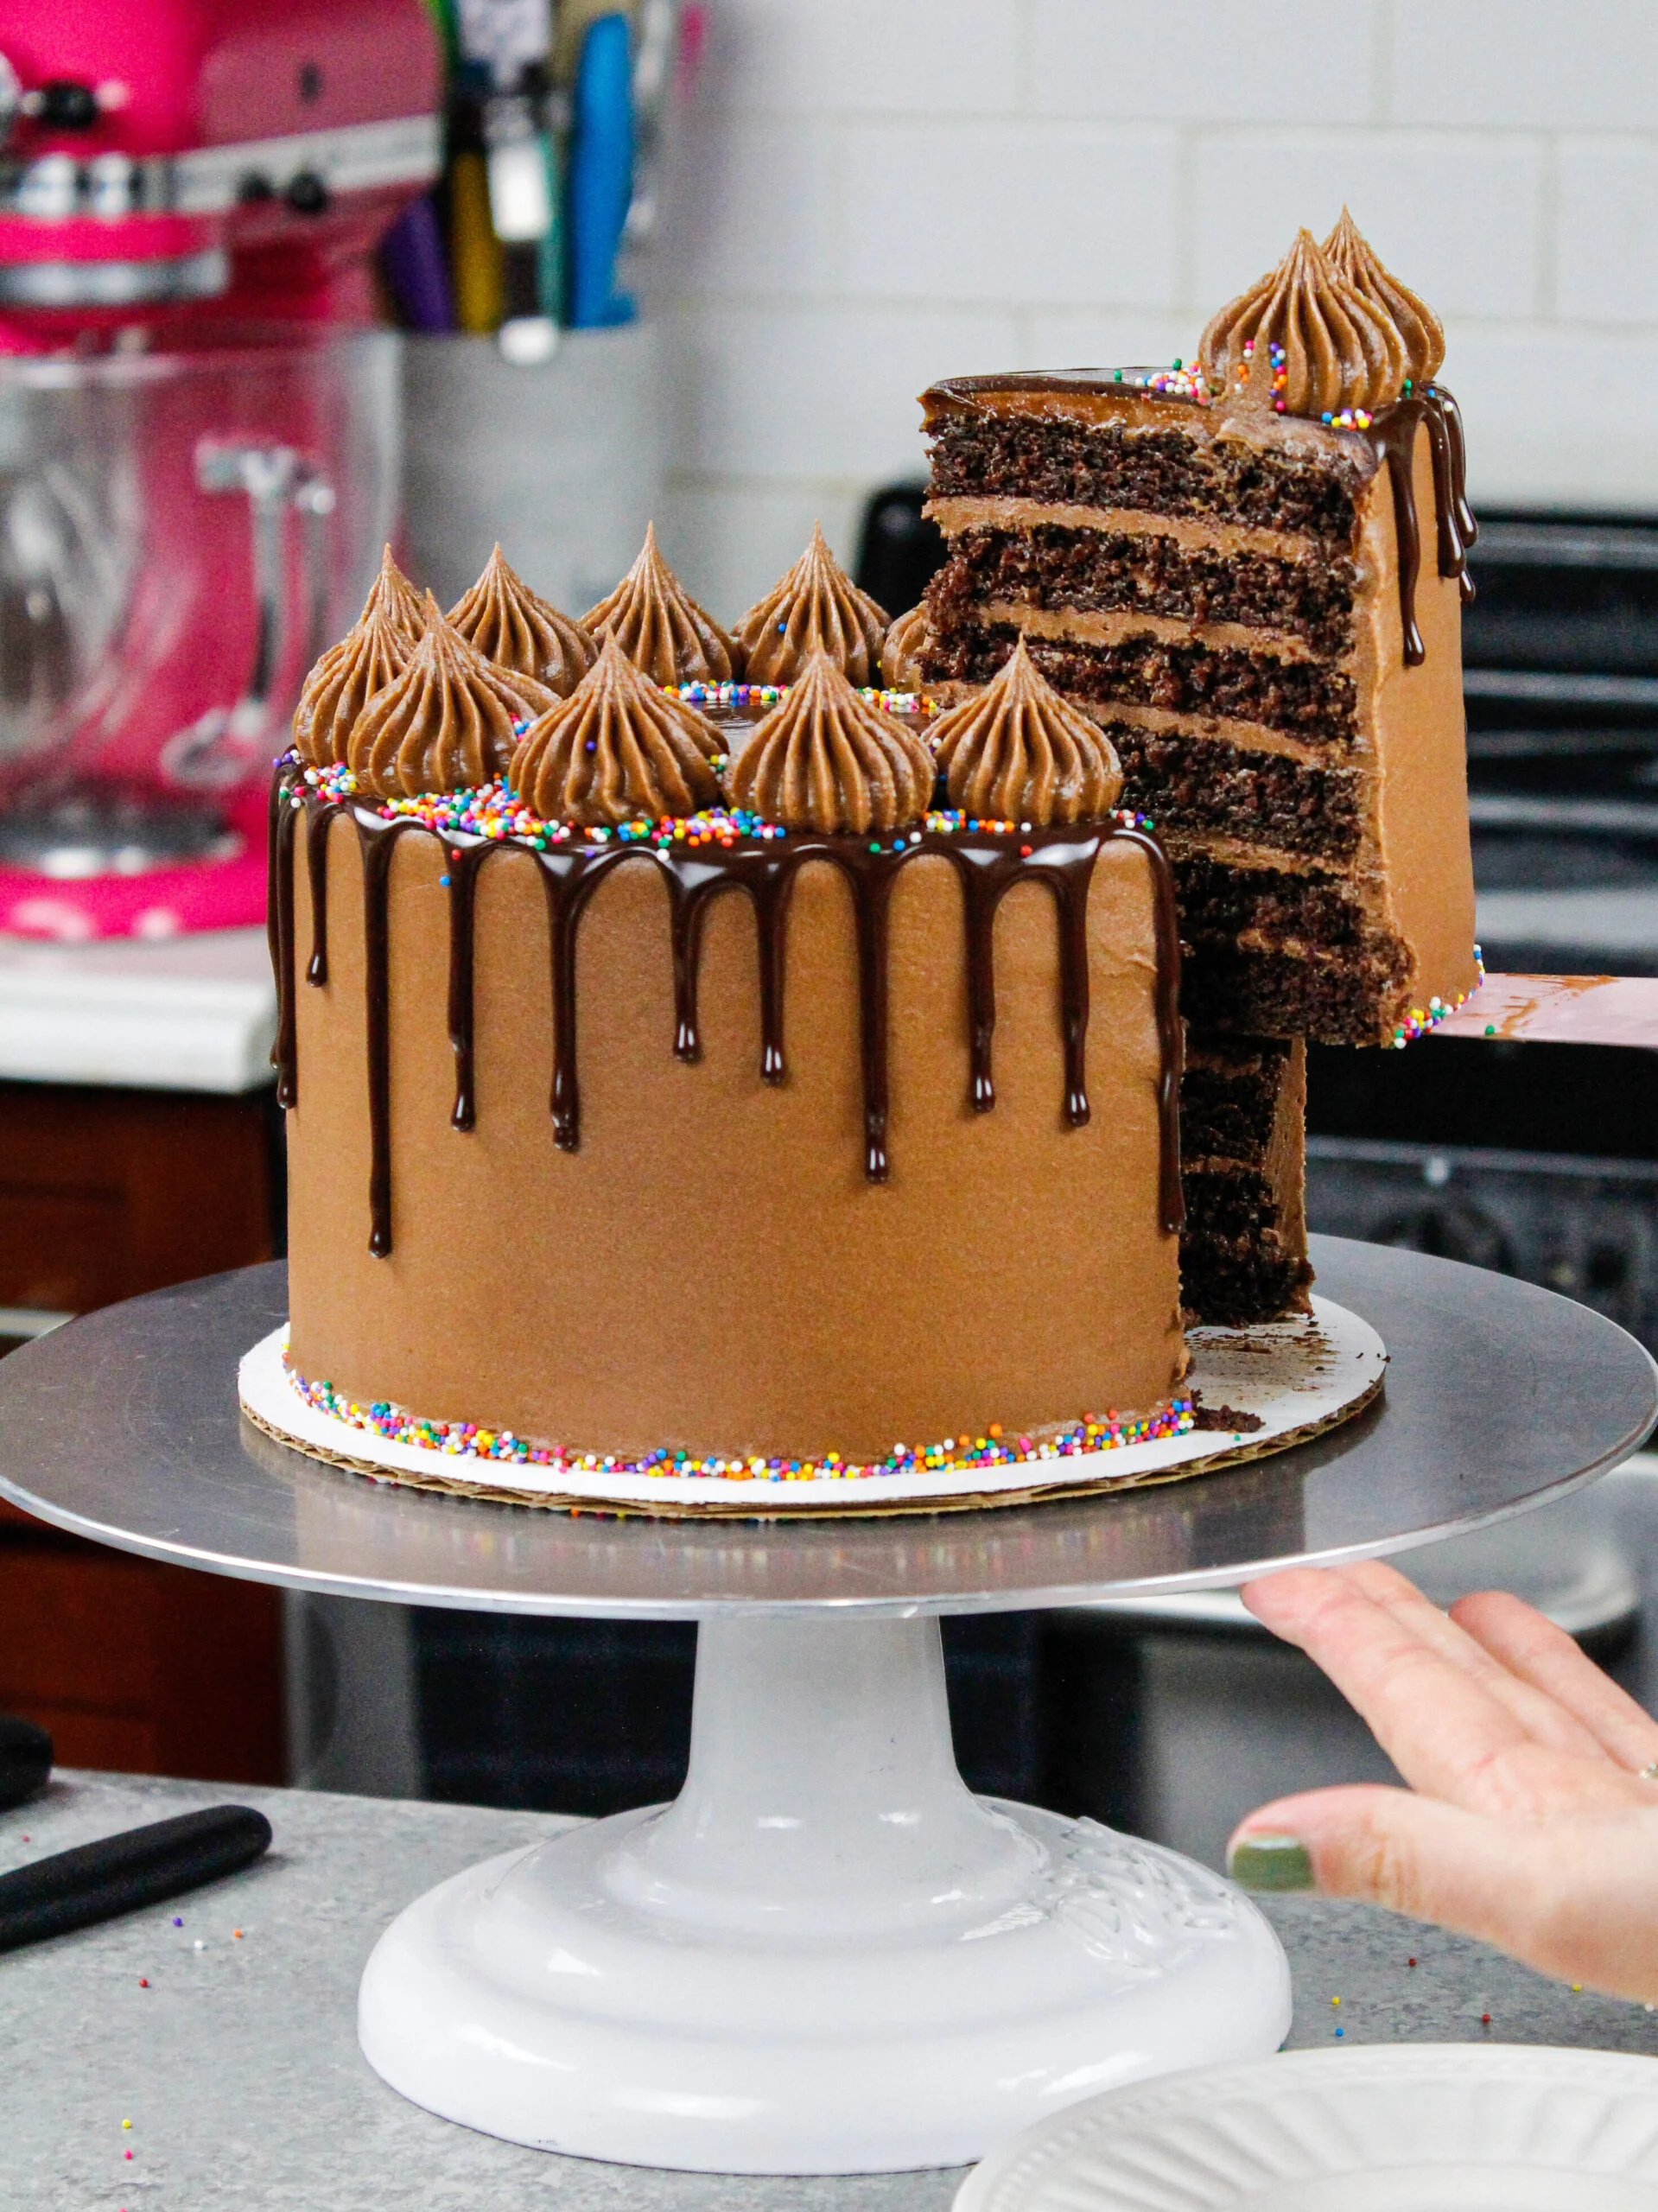 Cakebeslag maken | Recept | Betty's Kitchen Foodblog